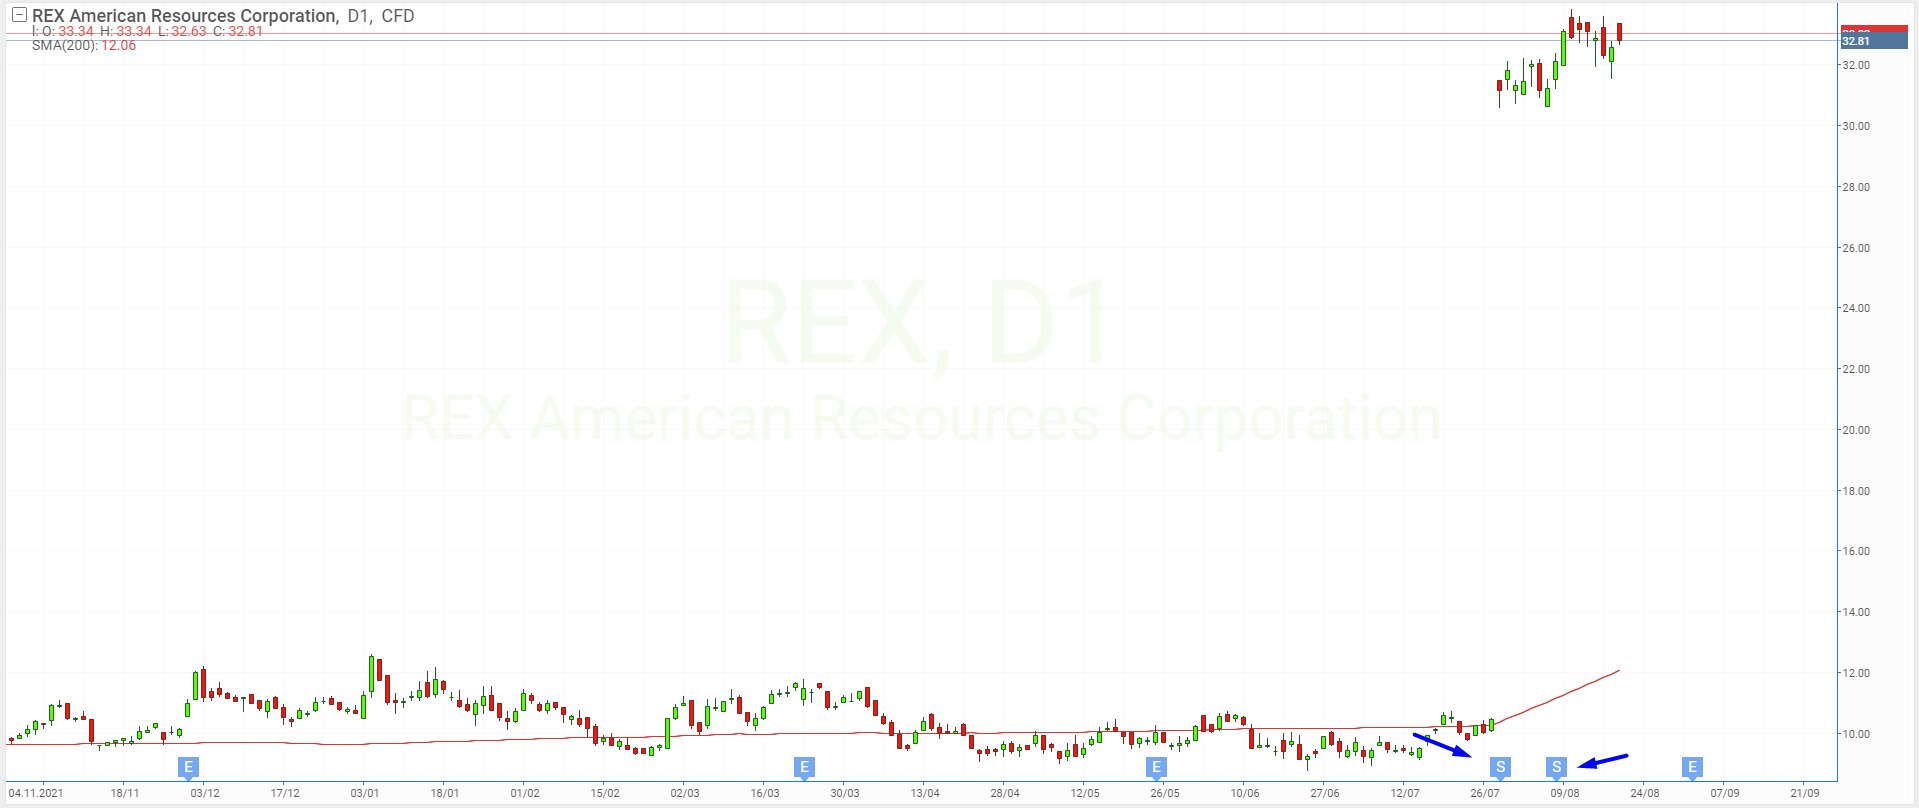 Зворотний спліт акцій REX American Resources